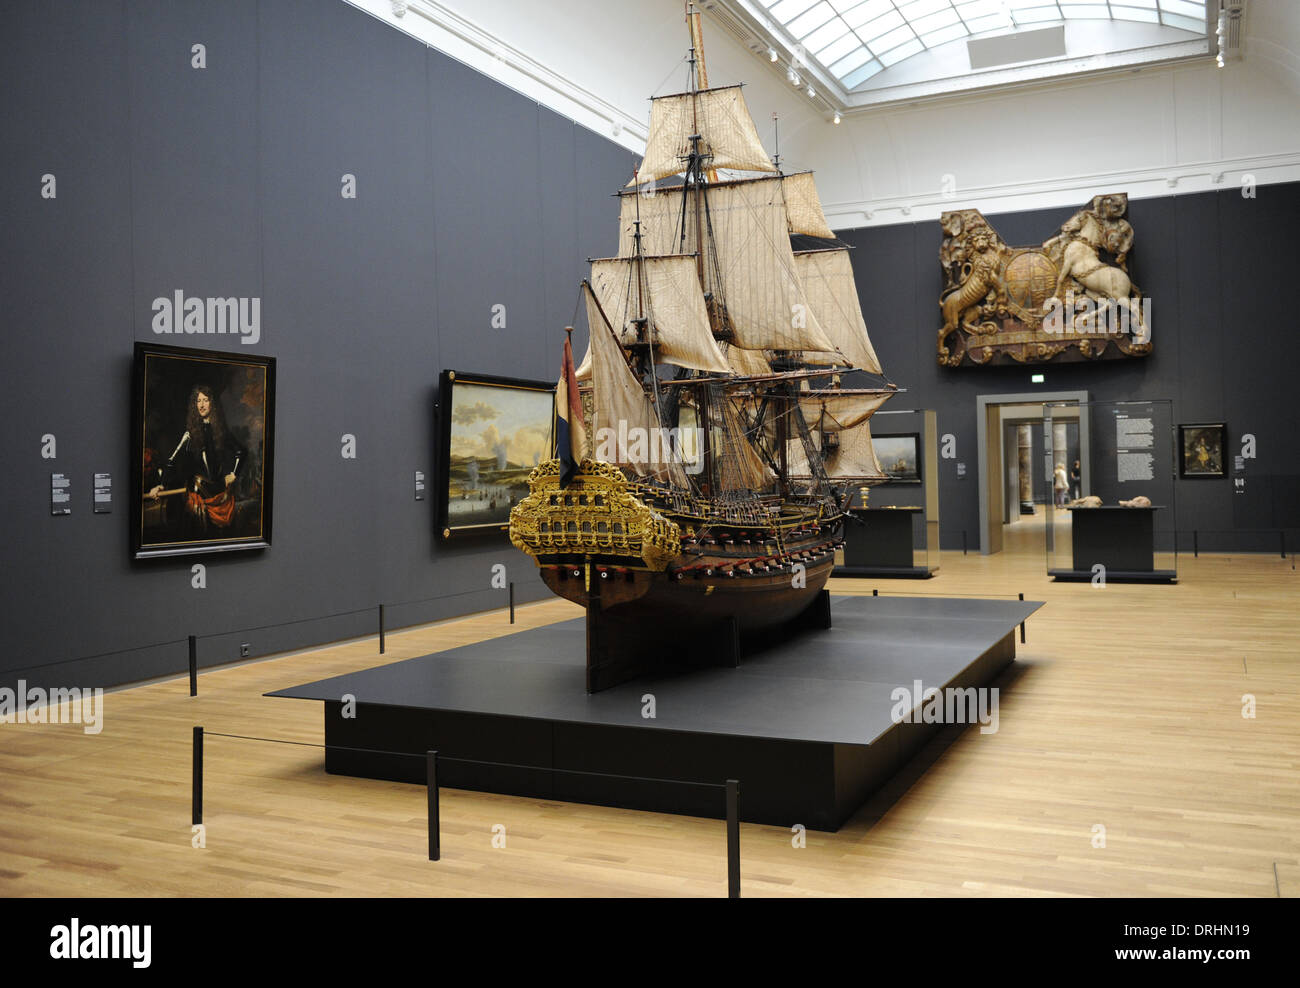 La Hollande. Amsterdam. Rijksmuseum. Avec le modèle de navire de William Rex. Cornelis Moesman, Adriaen de Vriend, 1698. Banque D'Images